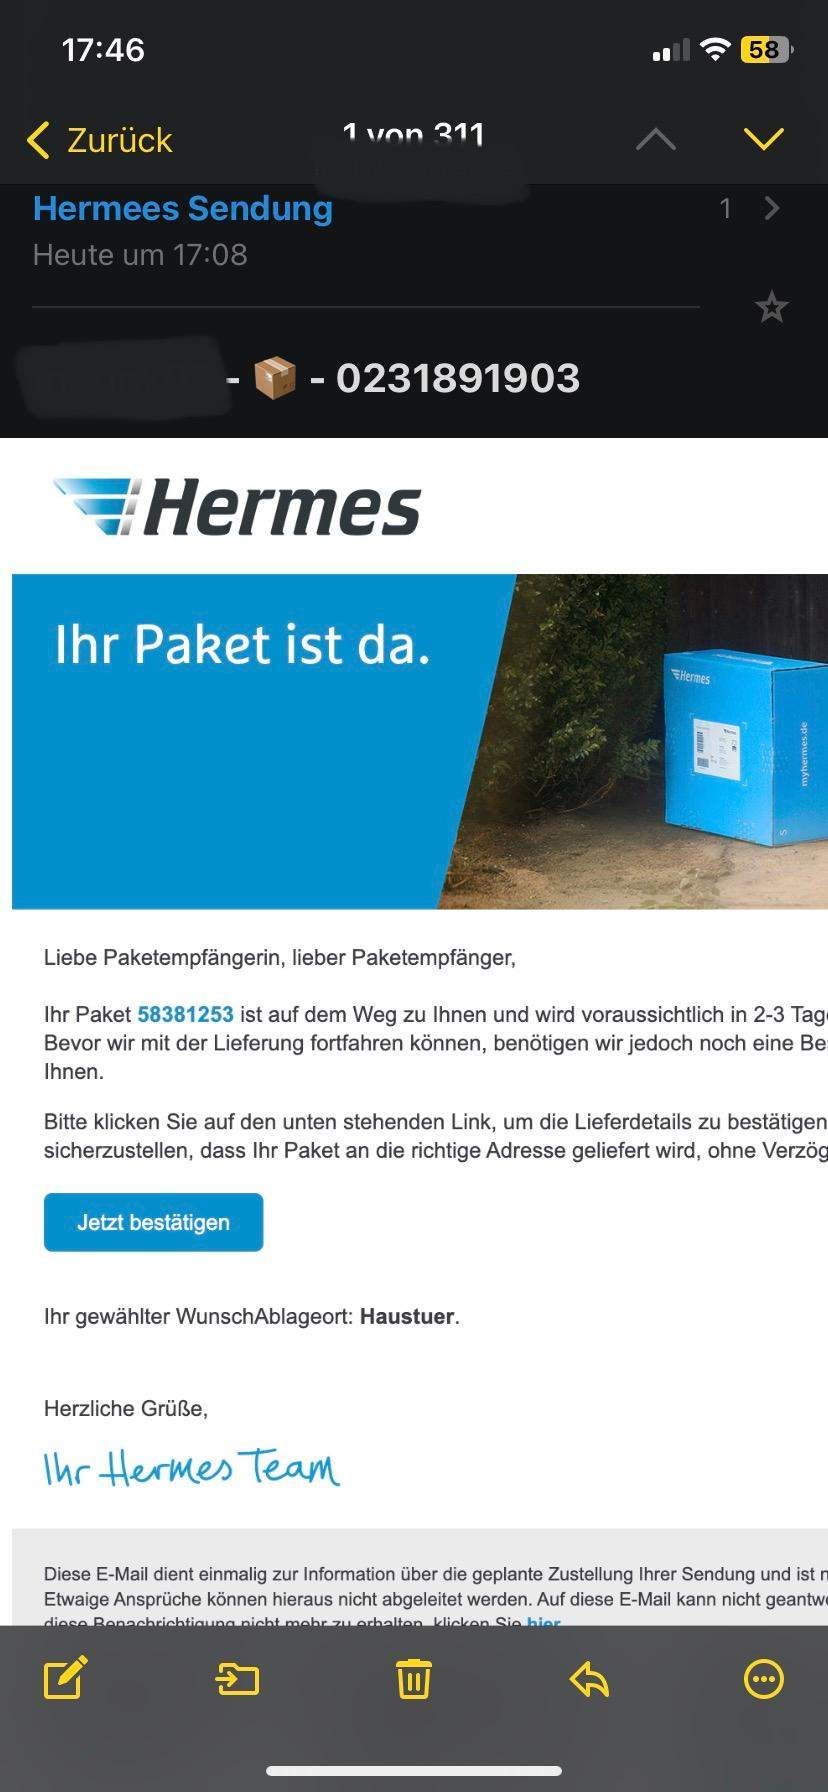 Vom TÜV geprüft und für gut befunden - Hermes mit der Note 1,9 bewertet